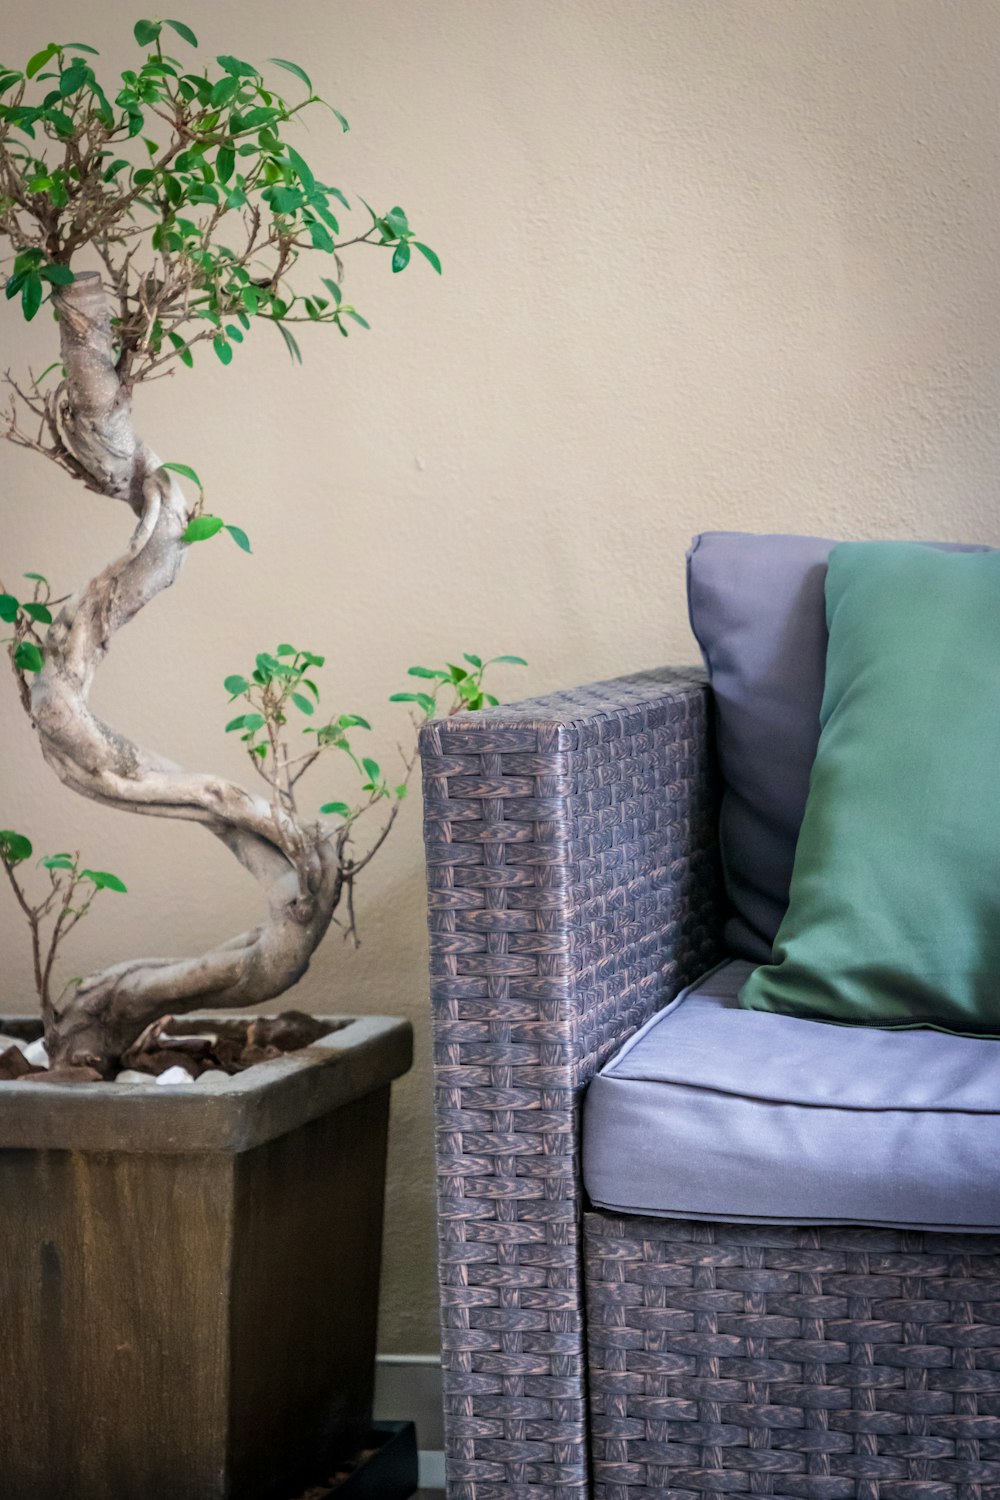 Bonsaibaum neben Stuhl